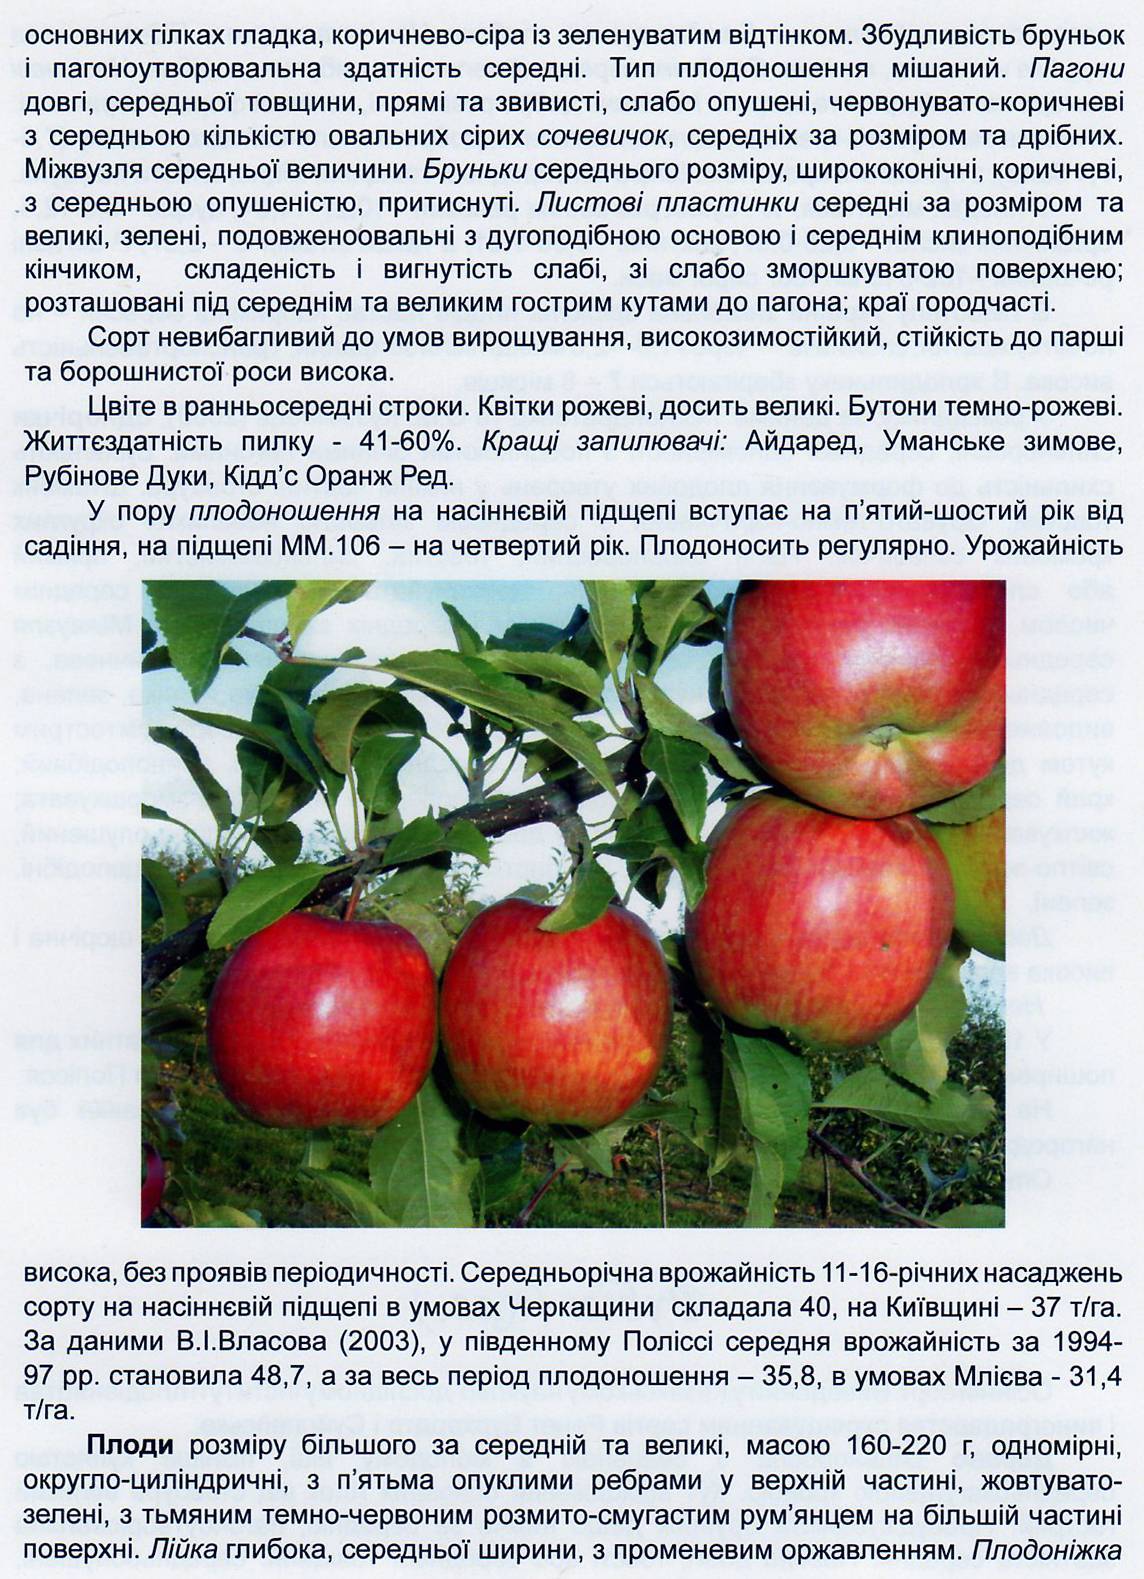 Описание и характеристики яблок сорта Айдаред, тонкости выращивания